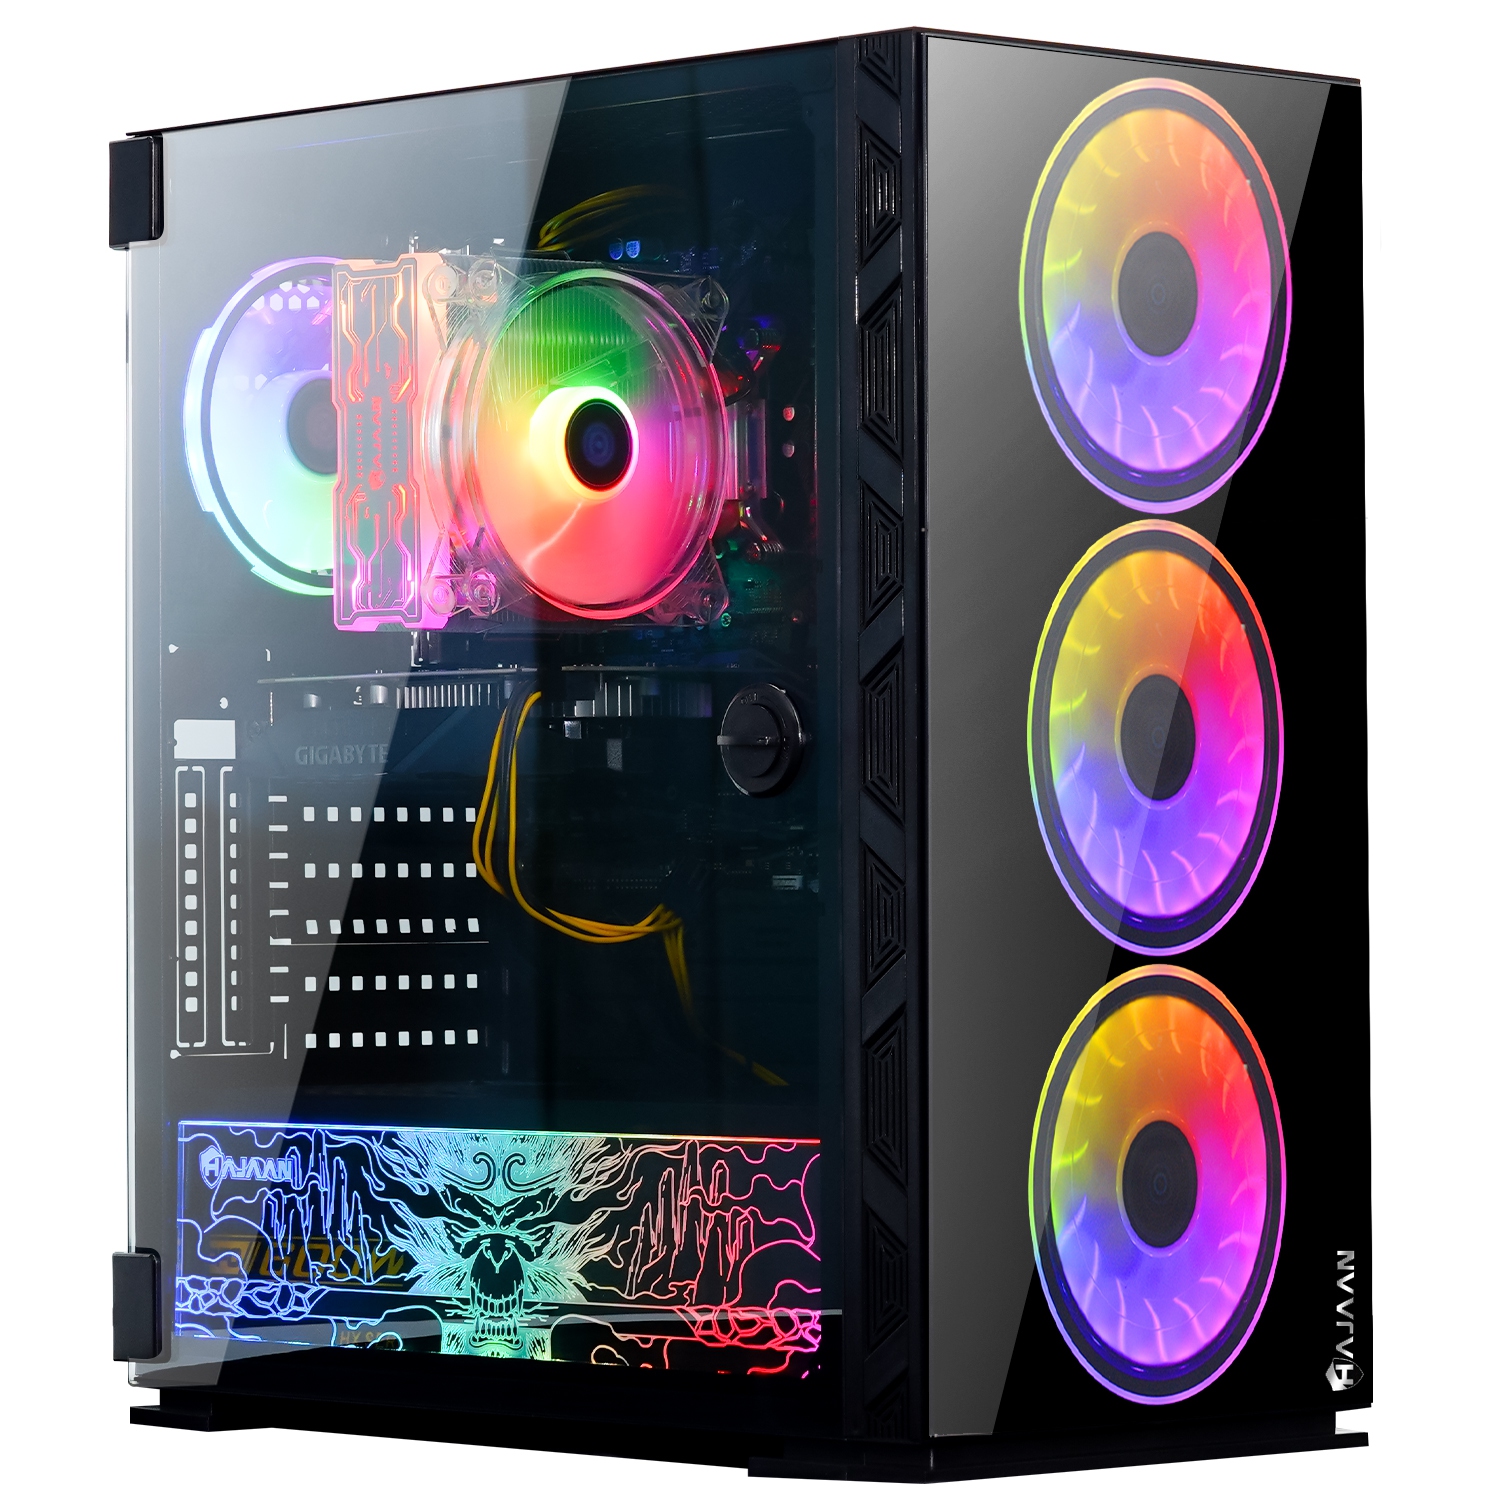 HAJAAN BREEZE PRO Gaming Desktop PC | RTX 3050 8GB GDDR6 | AMD Ryzen 7 5700X 8-Core Processor | 16GB DDR4 RAM | 512GB SSD | Windows 11 Pro | Black